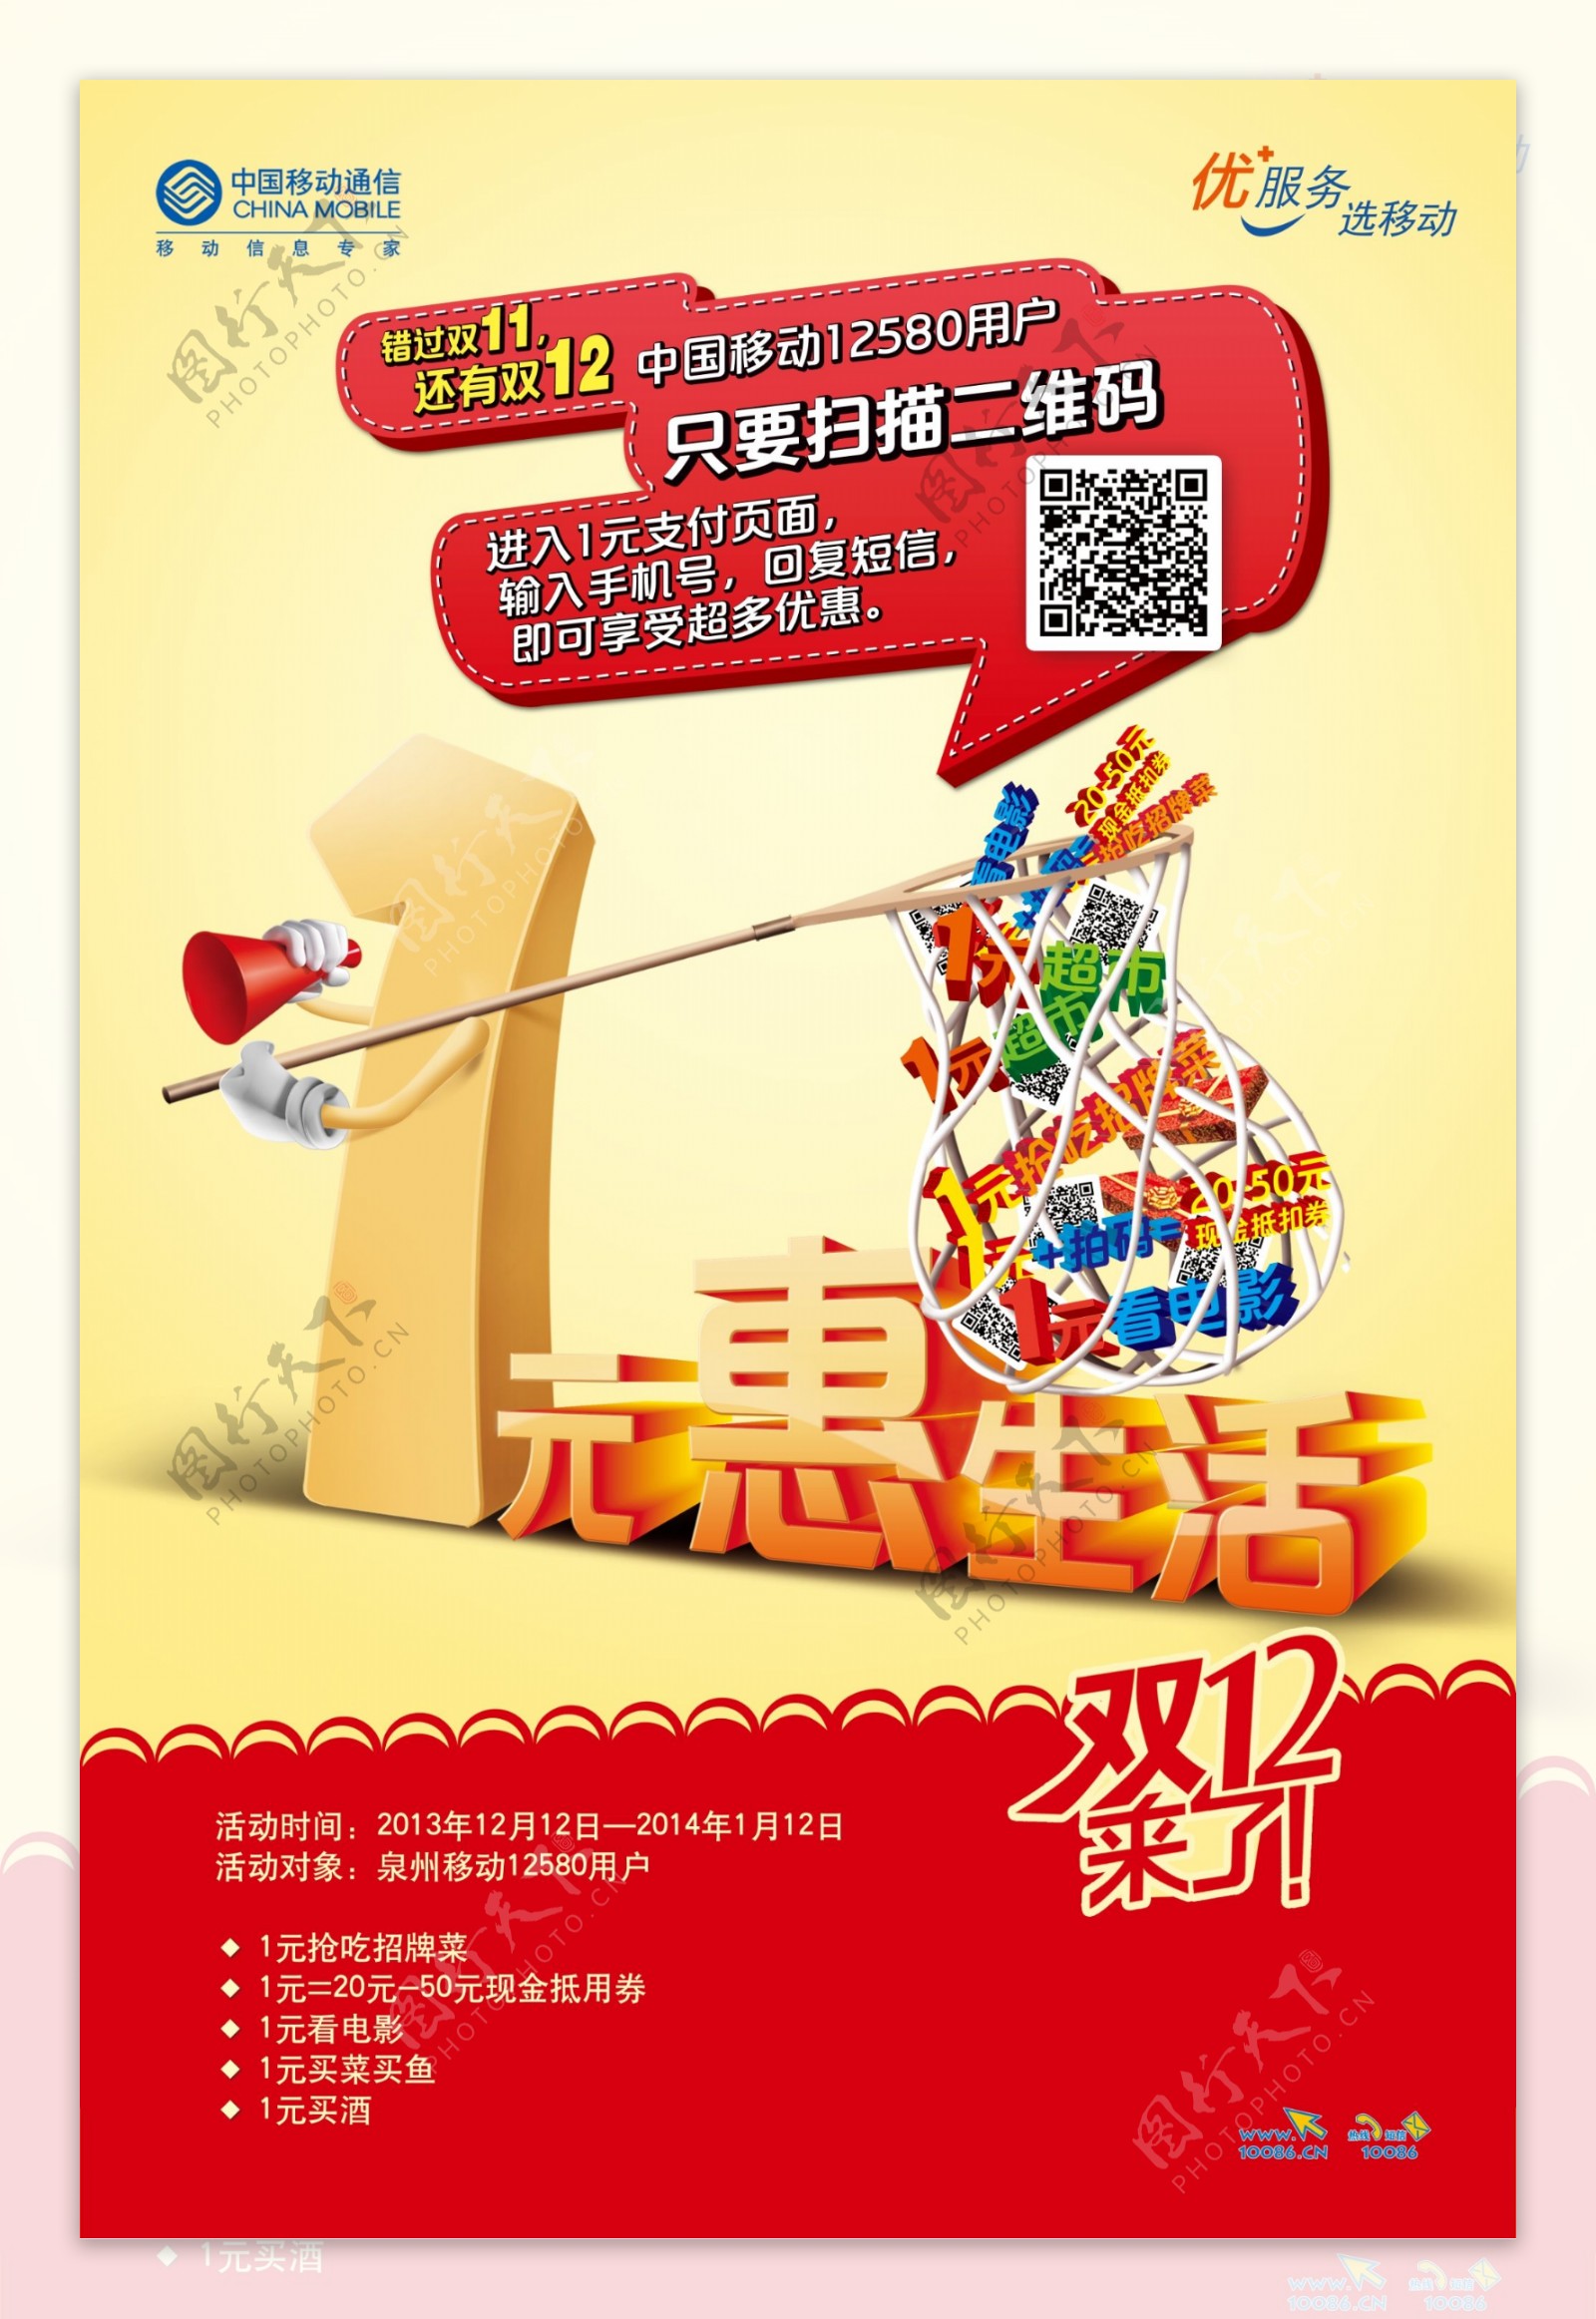 中国移动1元惠广告PSD素材